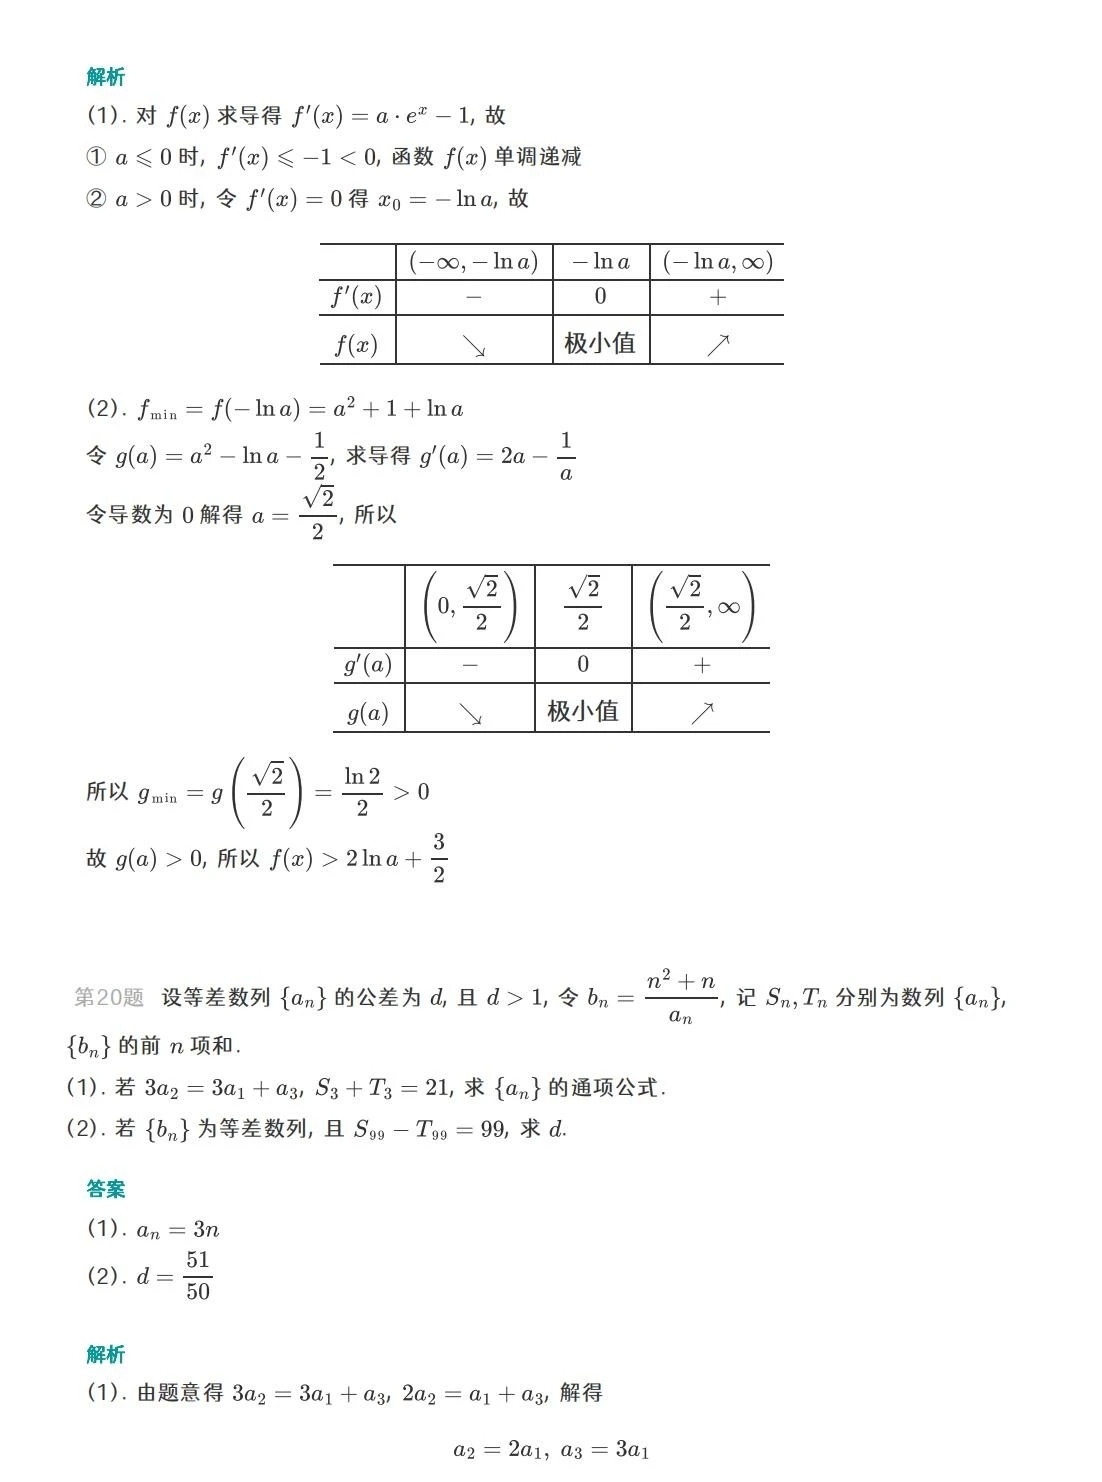 2023重庆高考数学试题及答案